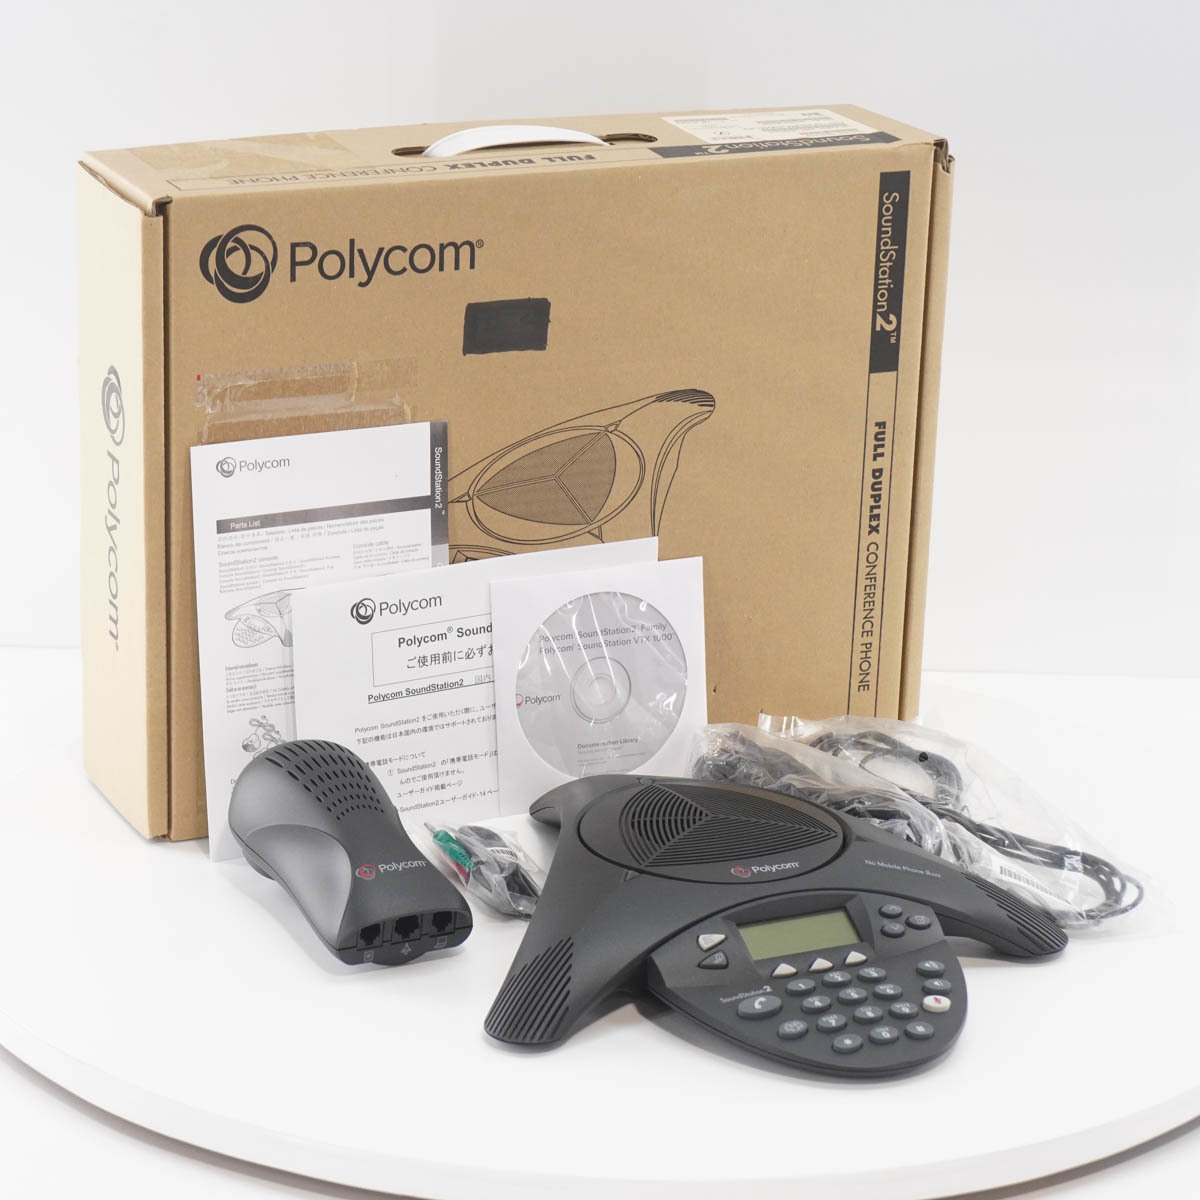 Polycom☆ポリコム サウンドステーション SoundStation2 会議システム ウォールモジュール2201-16200-601  22015100-601 2201-16020-602